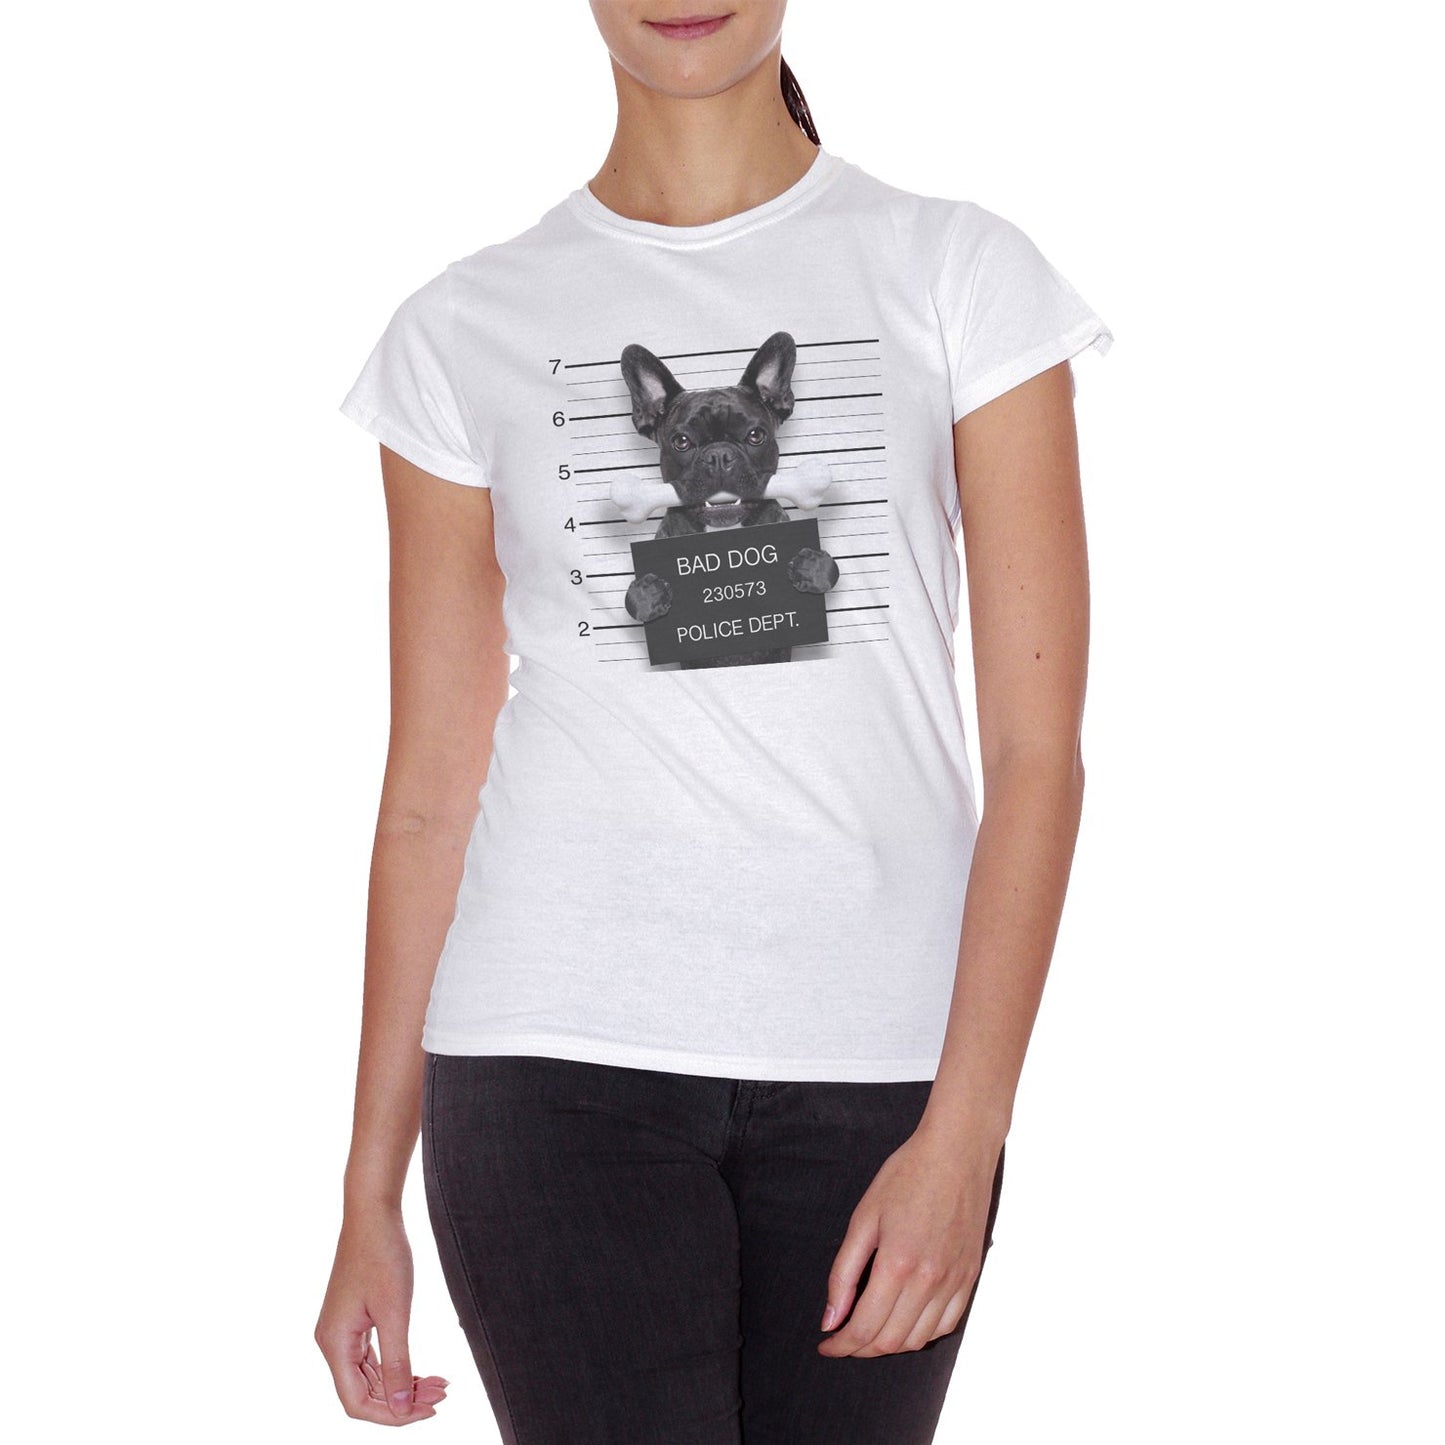 Lavender T-Shirt Frenchbull Arrestato per Troppa tenerezza - Grafica sul Cane Bulldog Francese - Choose Ur Color Cuc shop